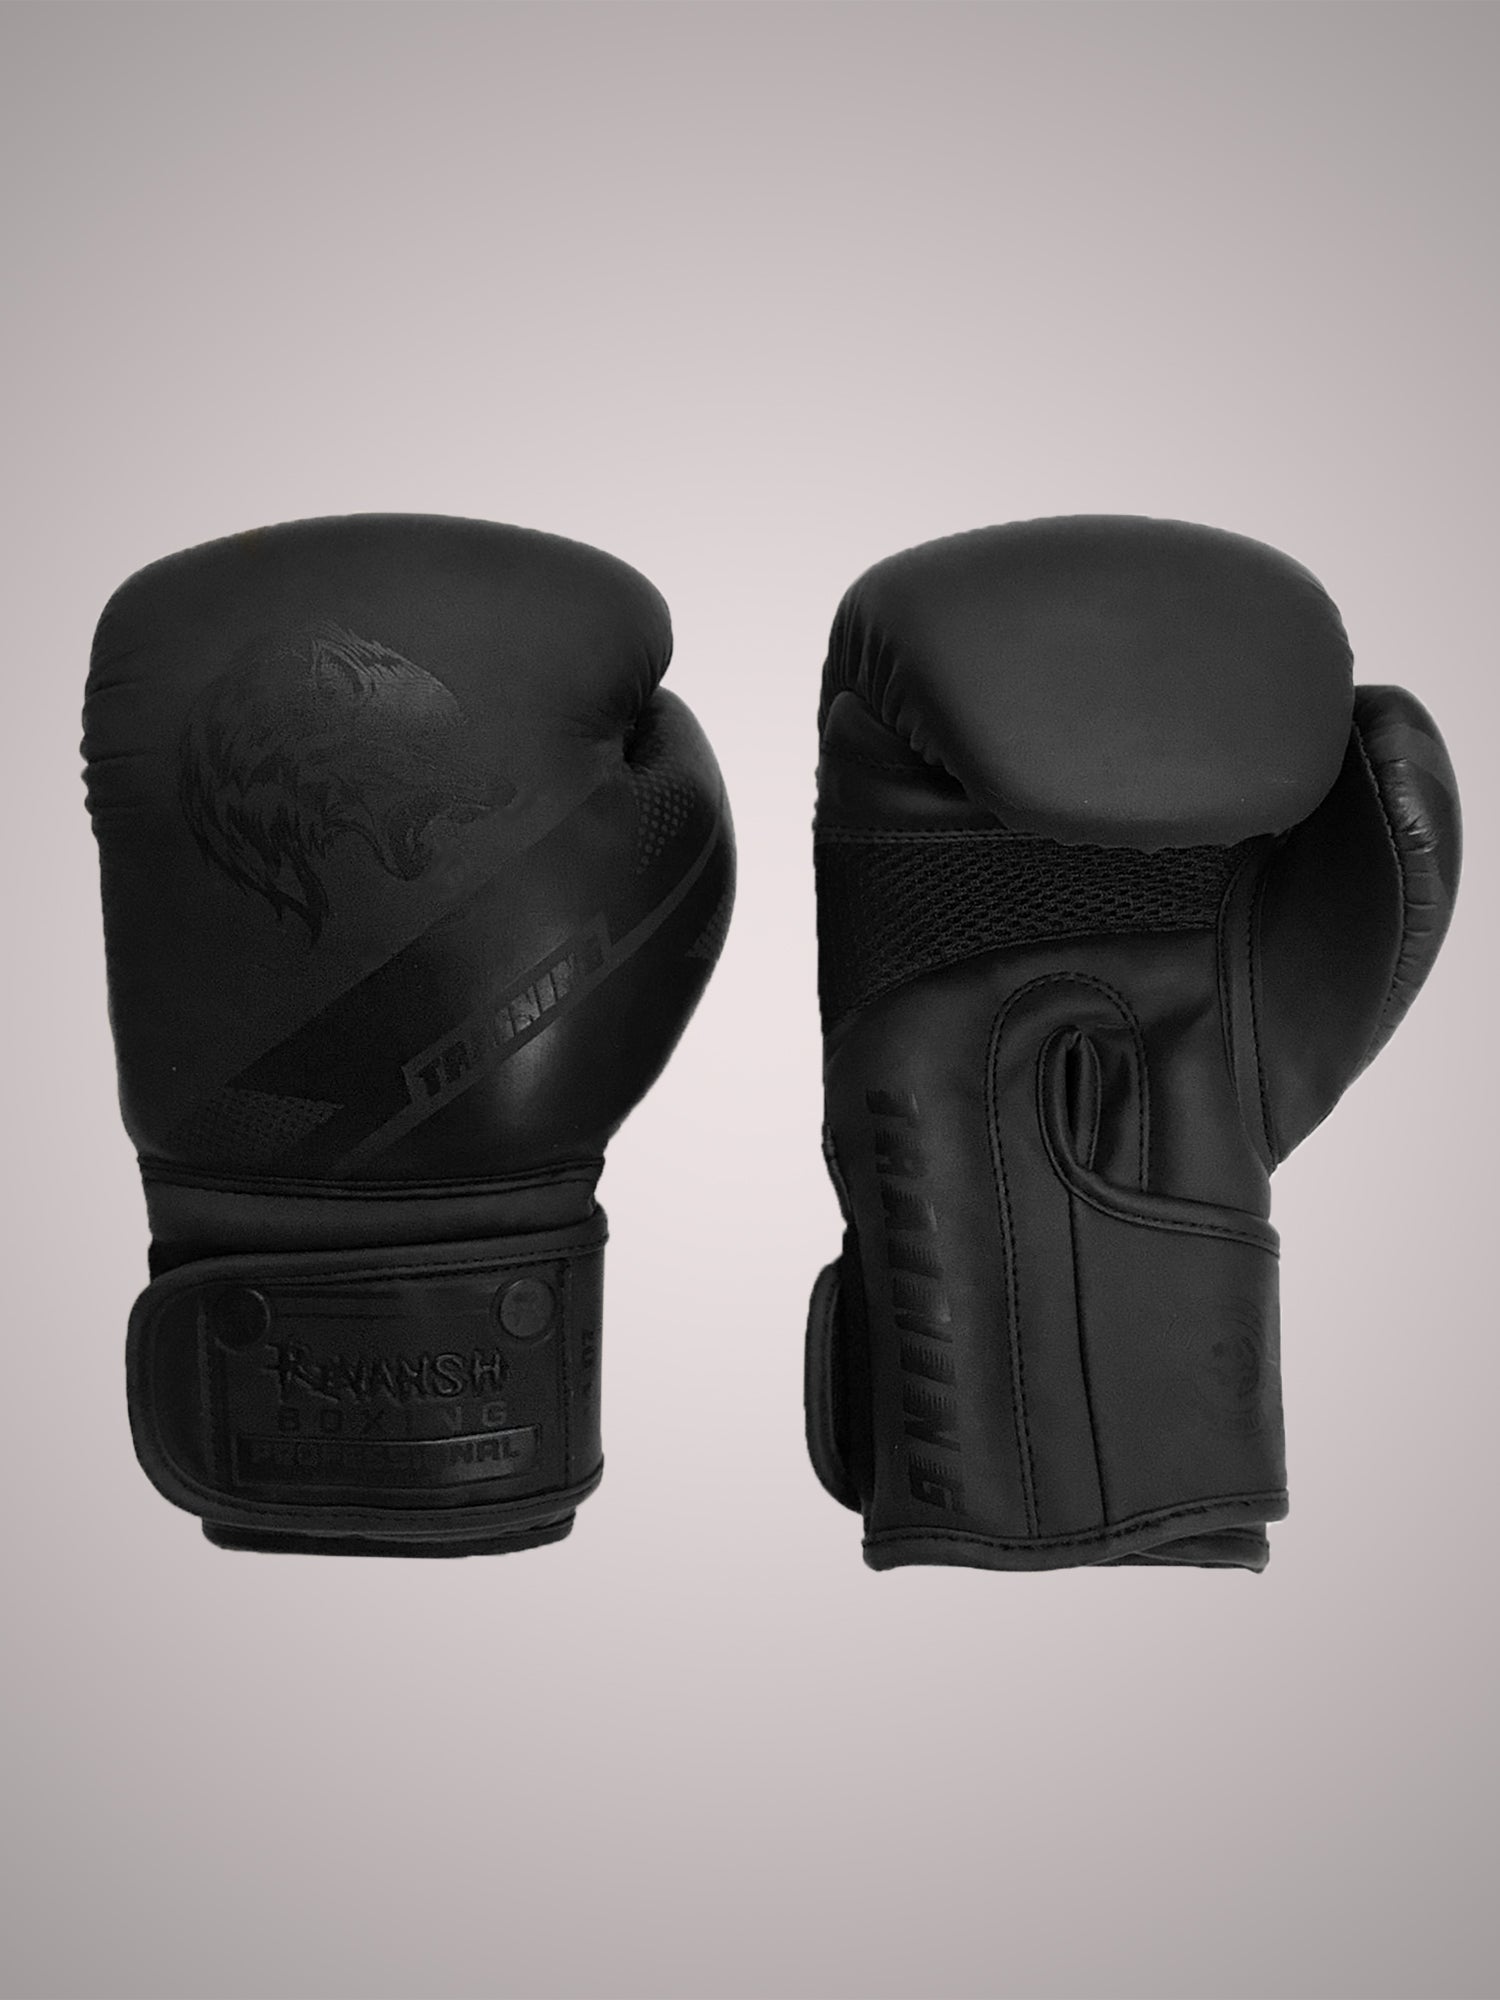 Boxing gloves REVANSH NEO, Black-Black